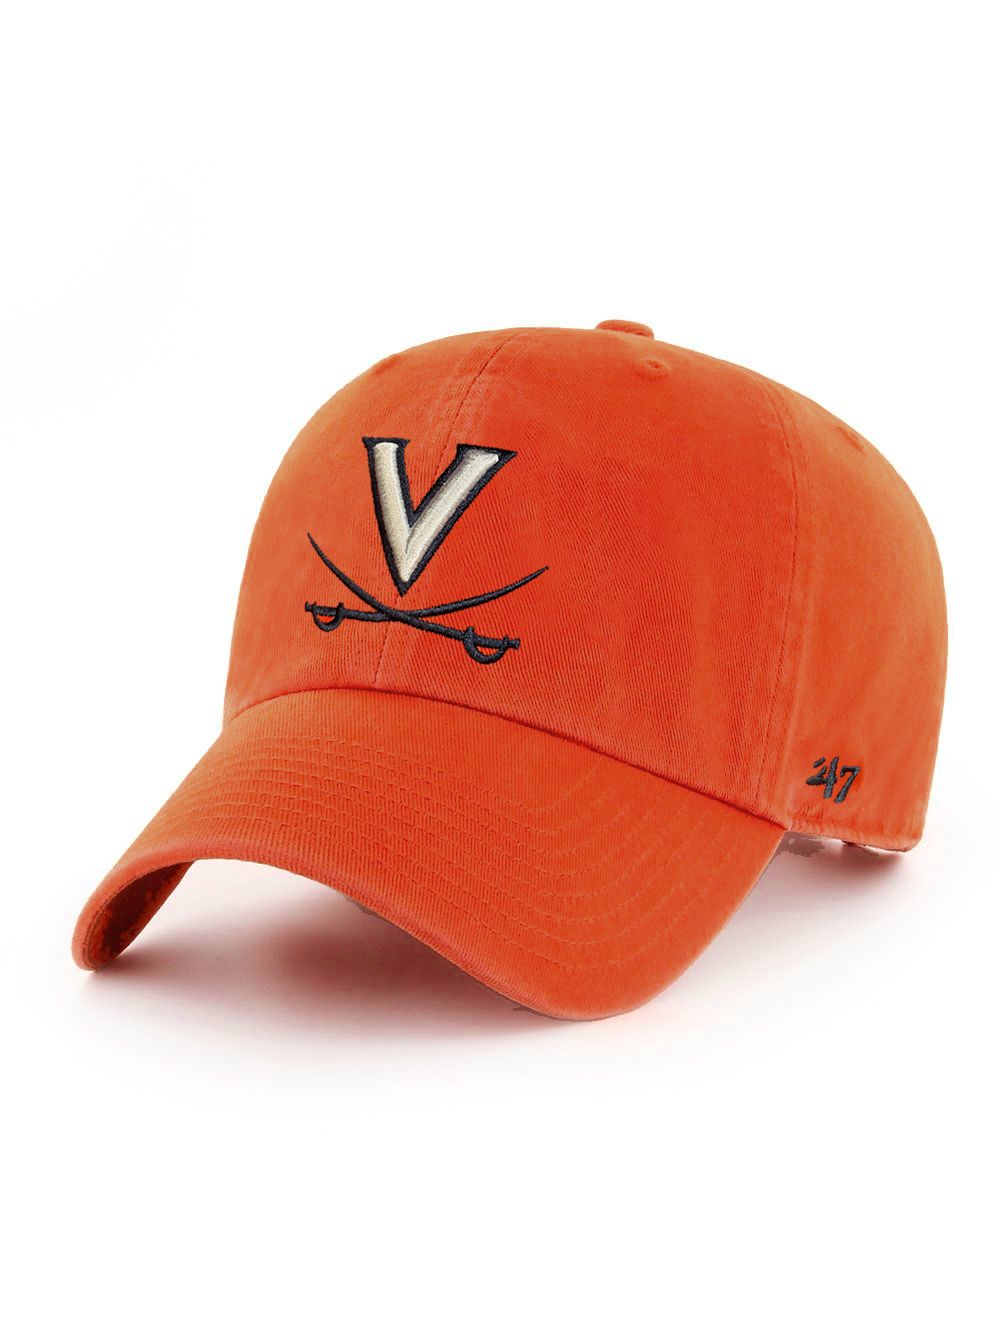 Charlottesville V Sabers Orange Crossed and - of 47 Adjustable Brand Mincer\'s Hat